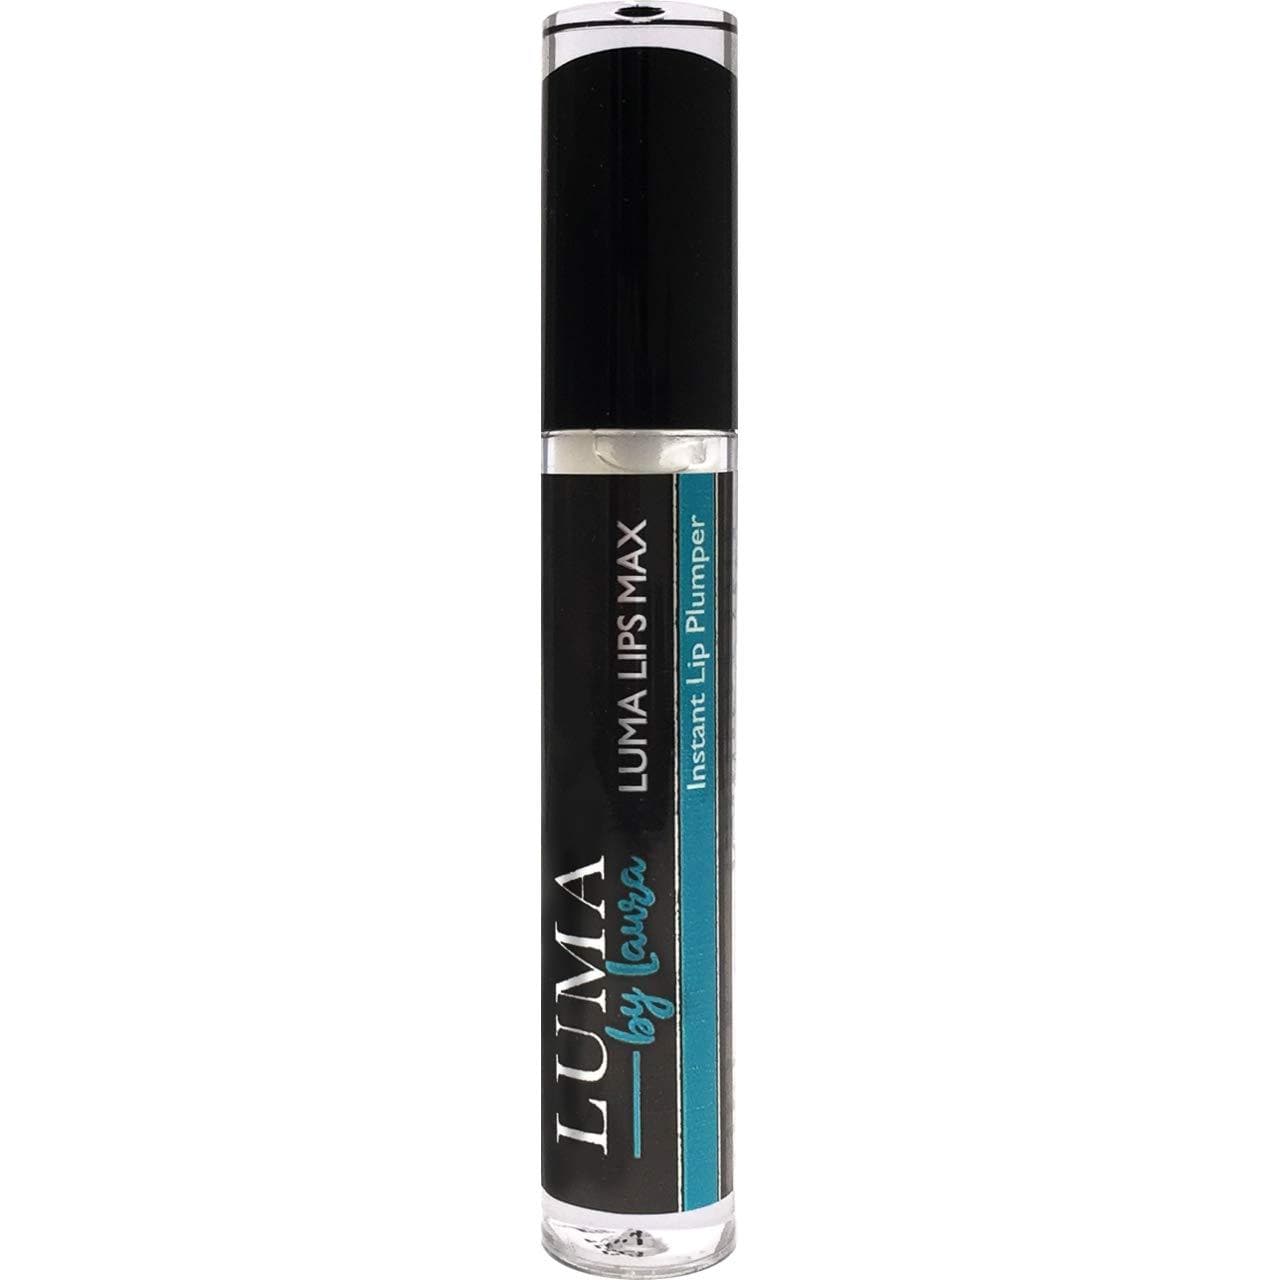 Luma Lip Plumper Gloss Instant Volumising Lip Plump Enhancer for